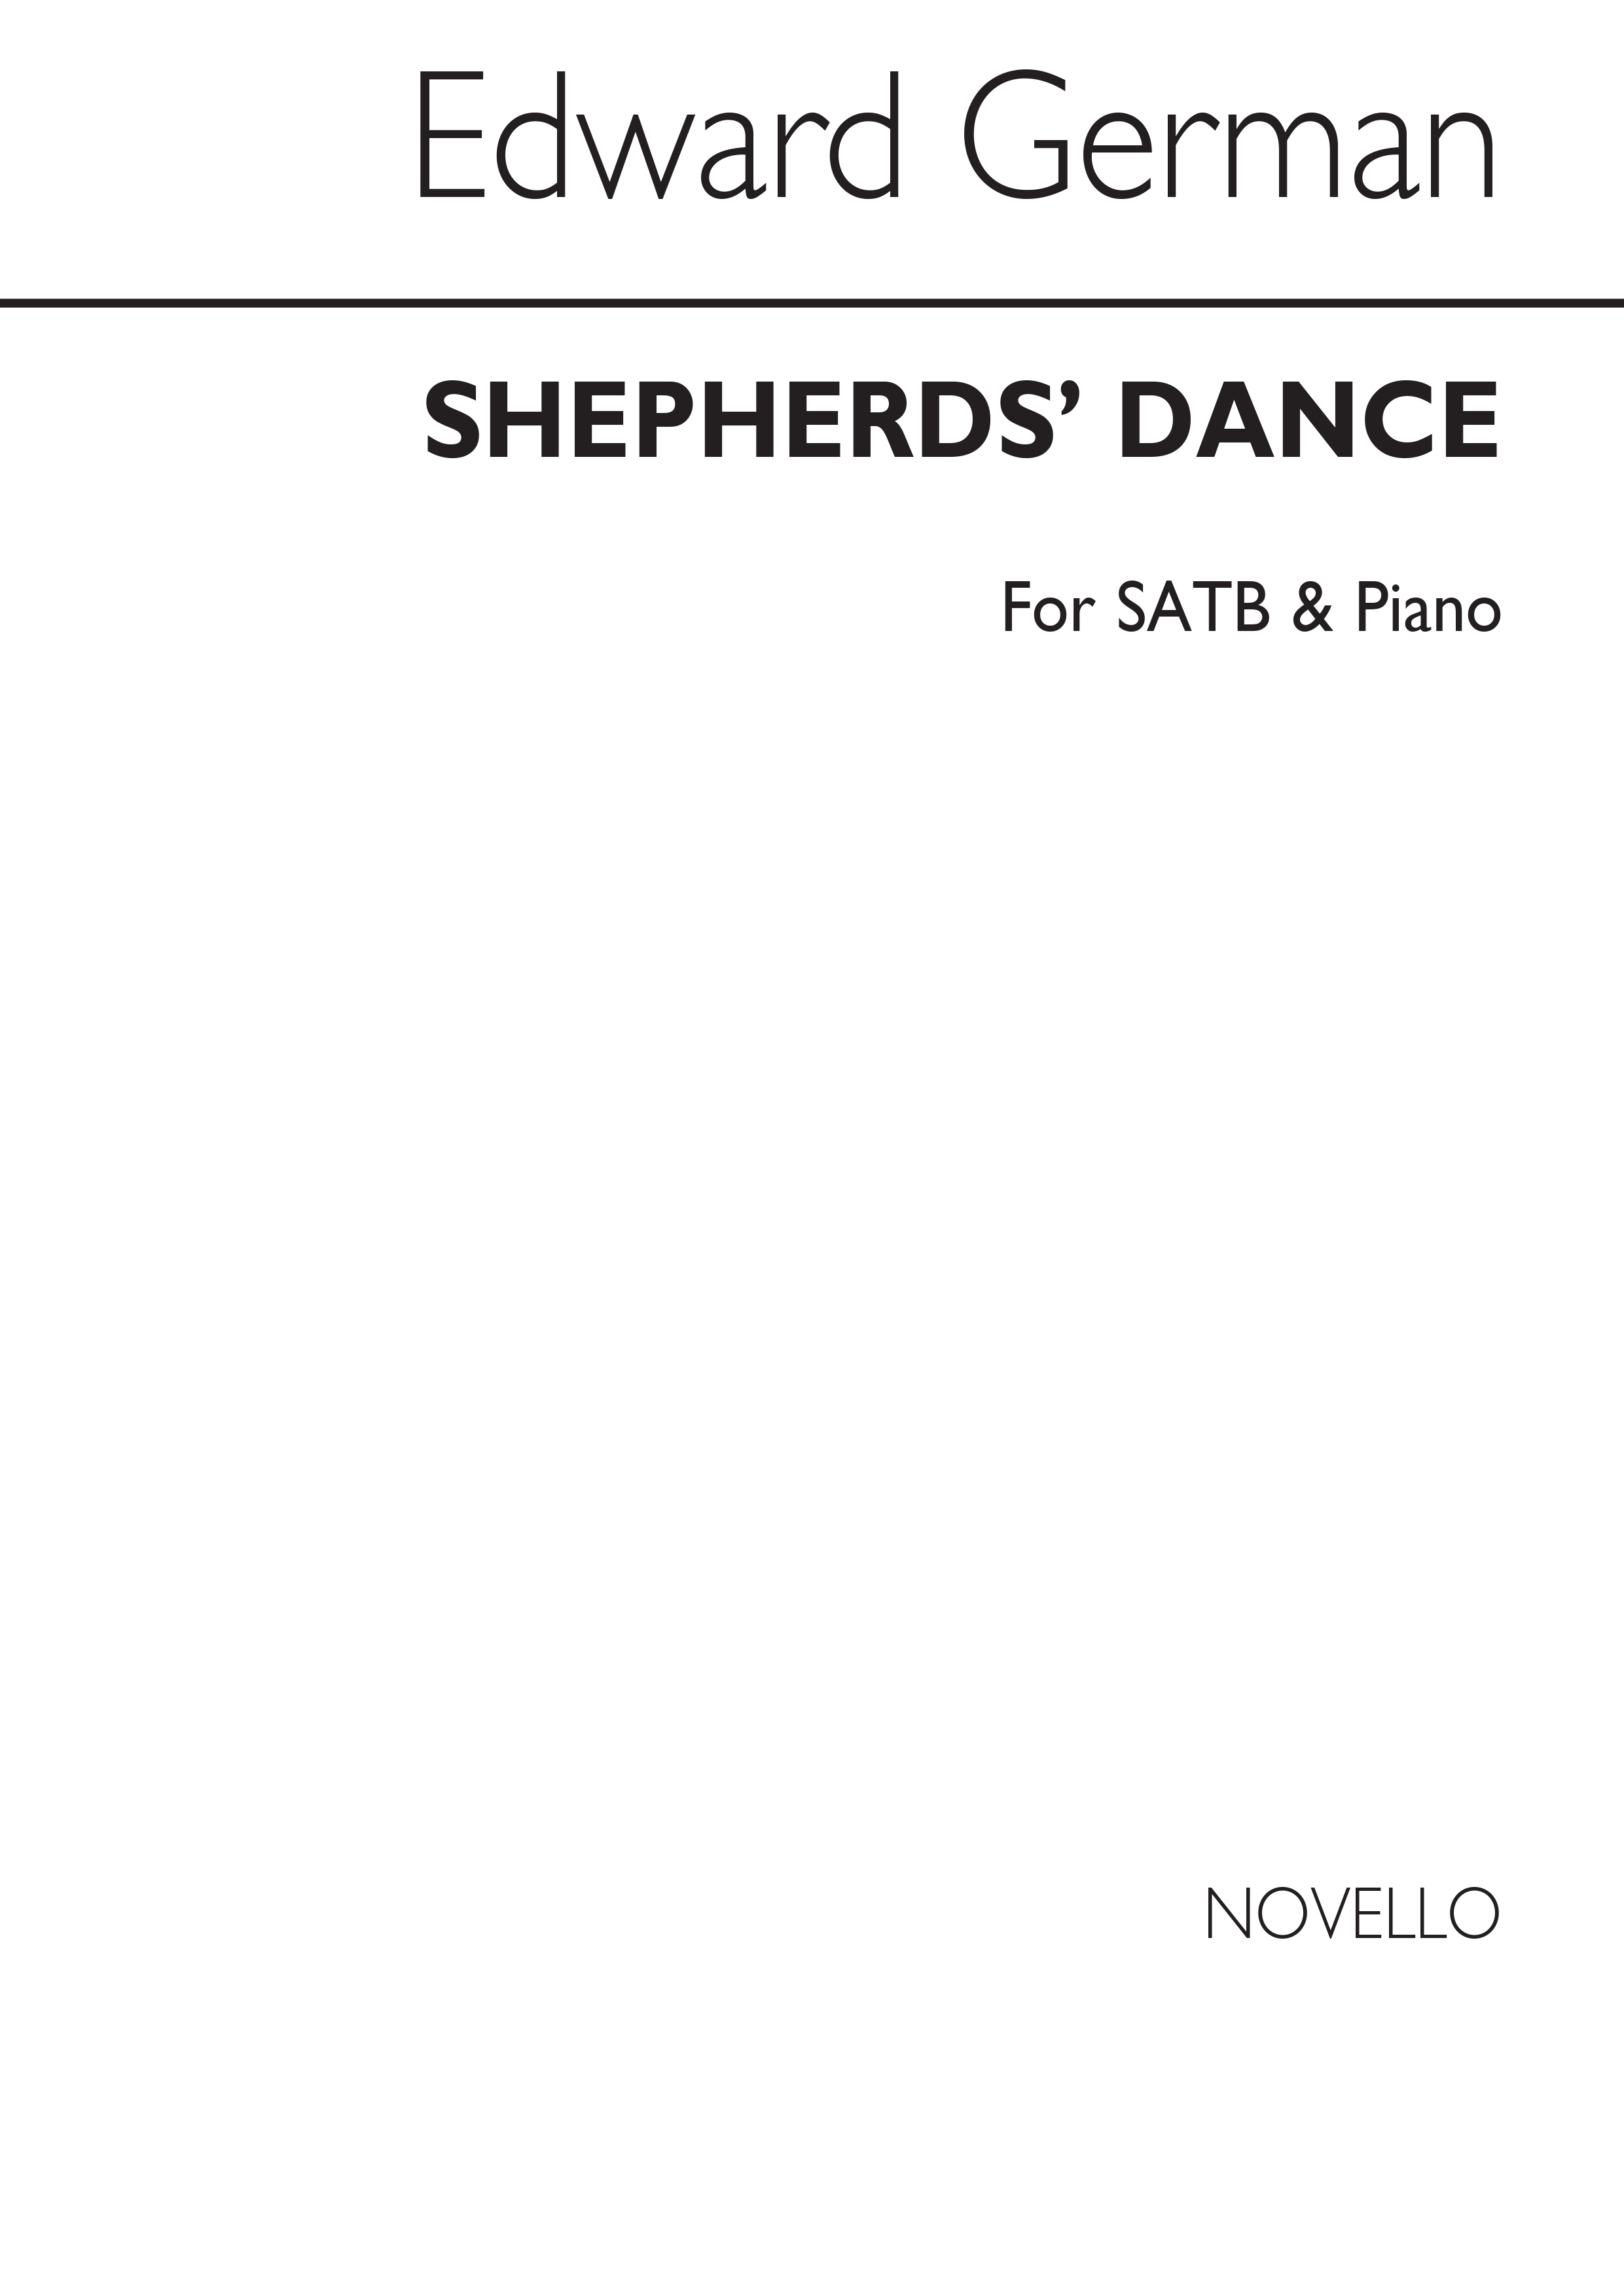 Edward German: Edward German Shepherds Dance: SATB: Vocal Score